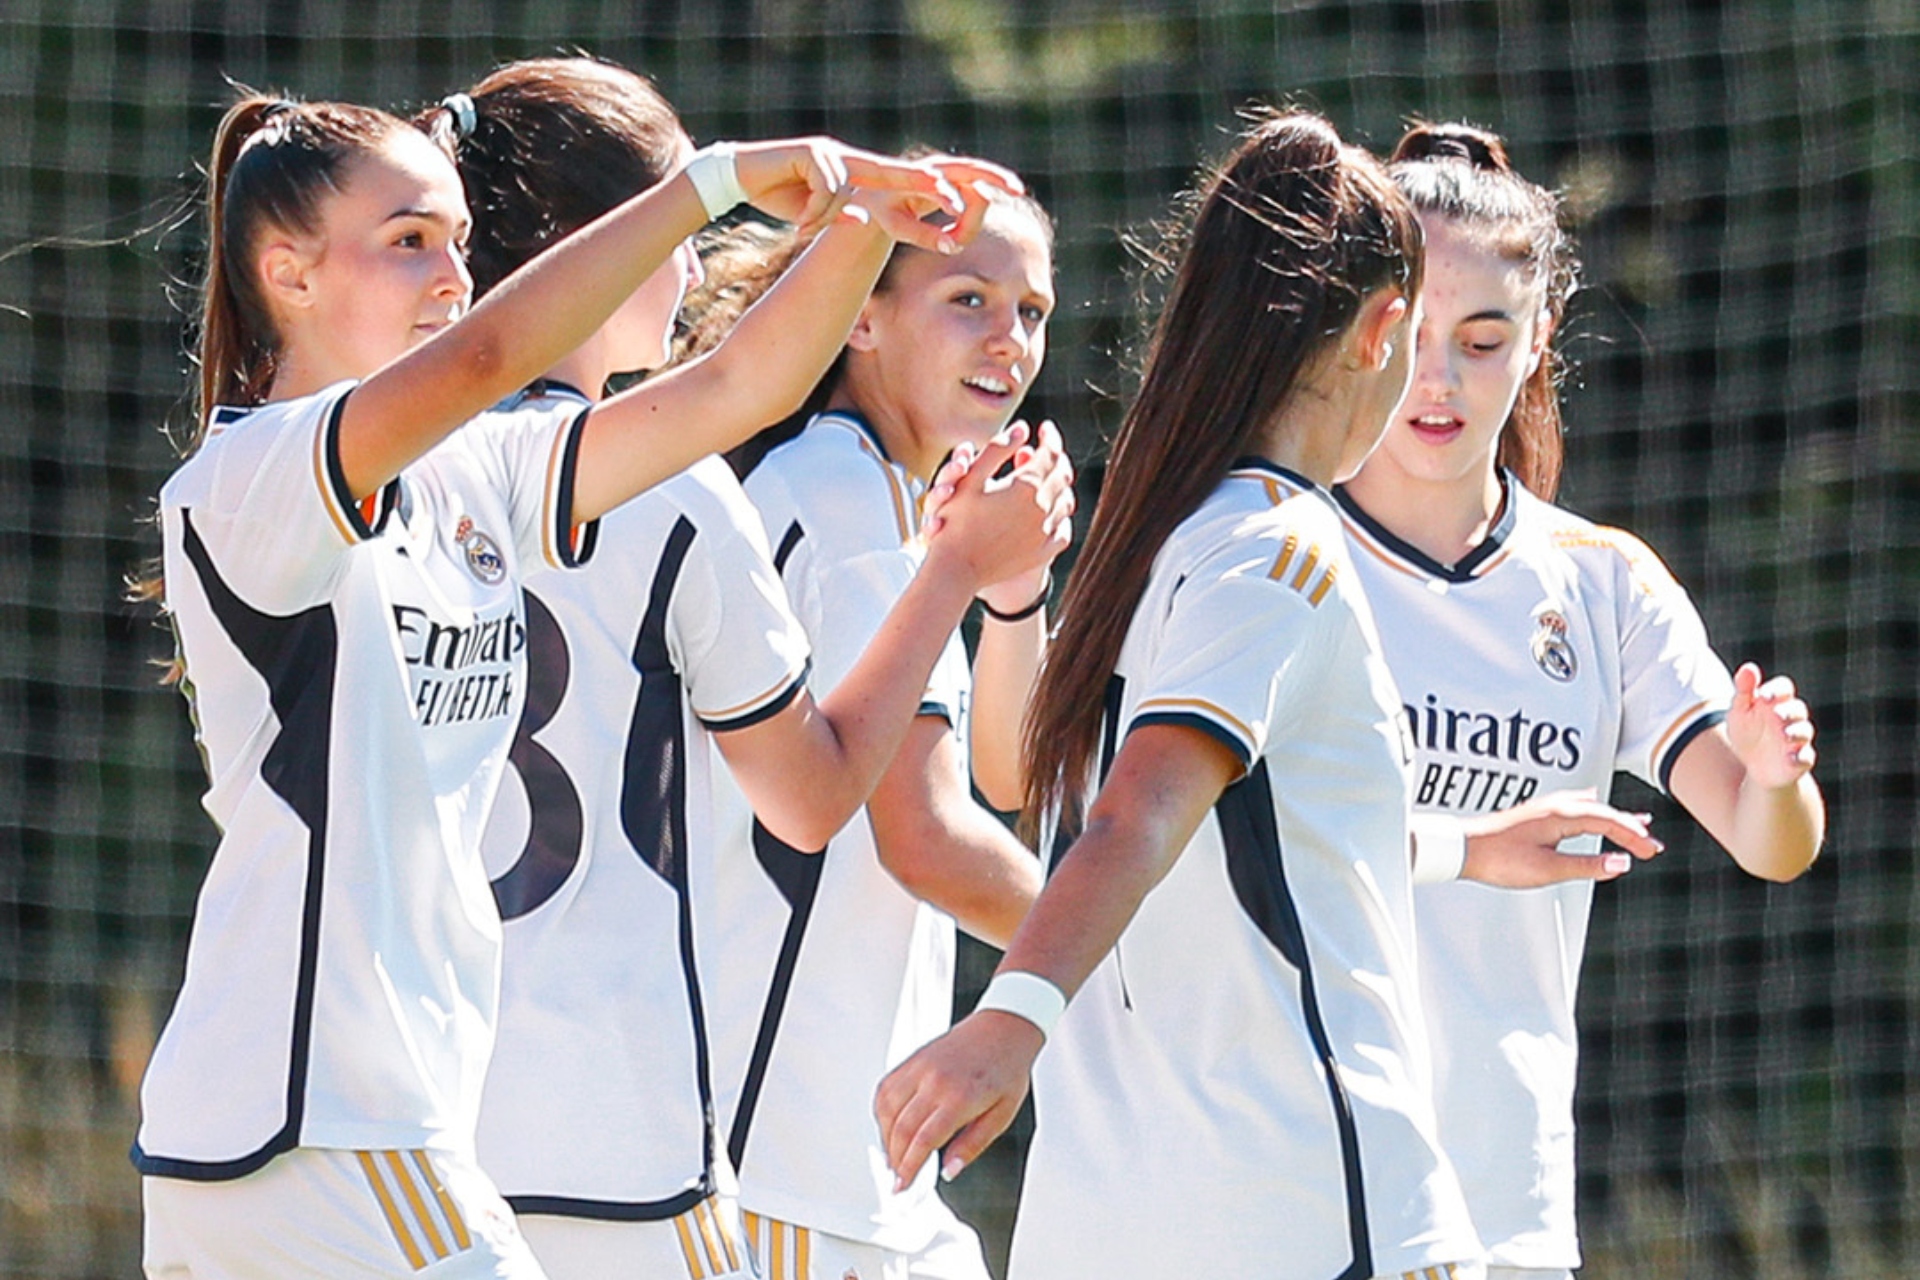 La cantera femenina, el importante ascenso para el crecimiento de las jugadoras. Madrid.